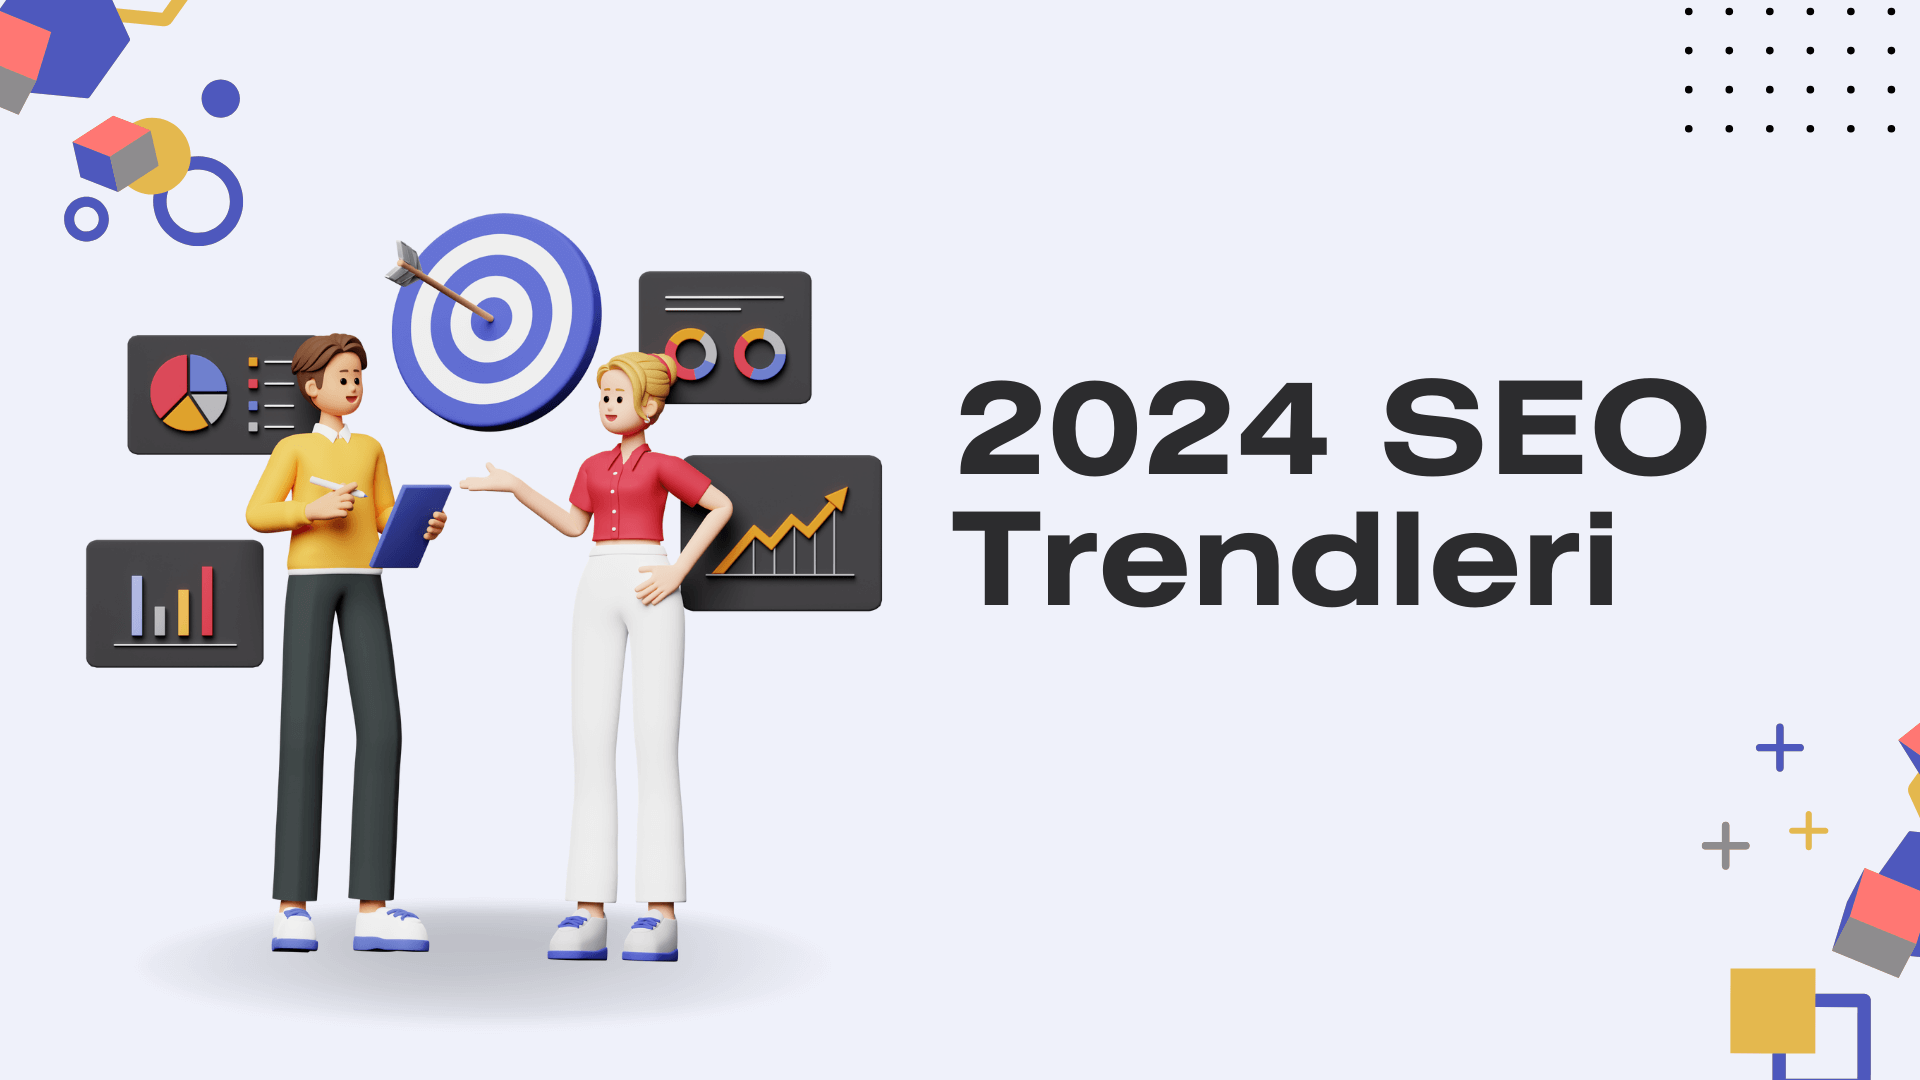 2024 SEO Trendleri: Arama Motorlarında Öne Çıkmanın Yolları